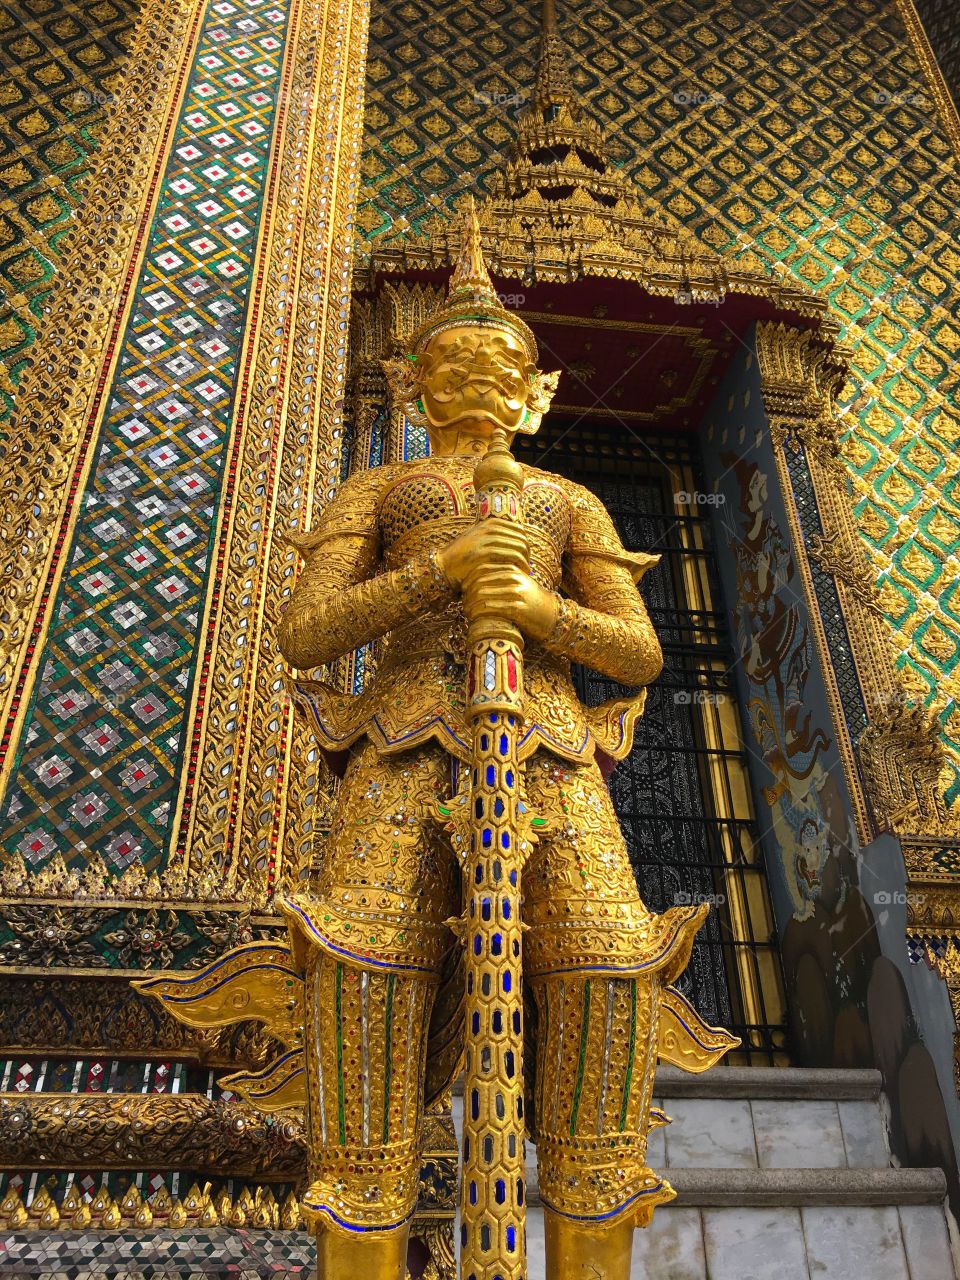 Grand Palace / Bangkok Thailand 34